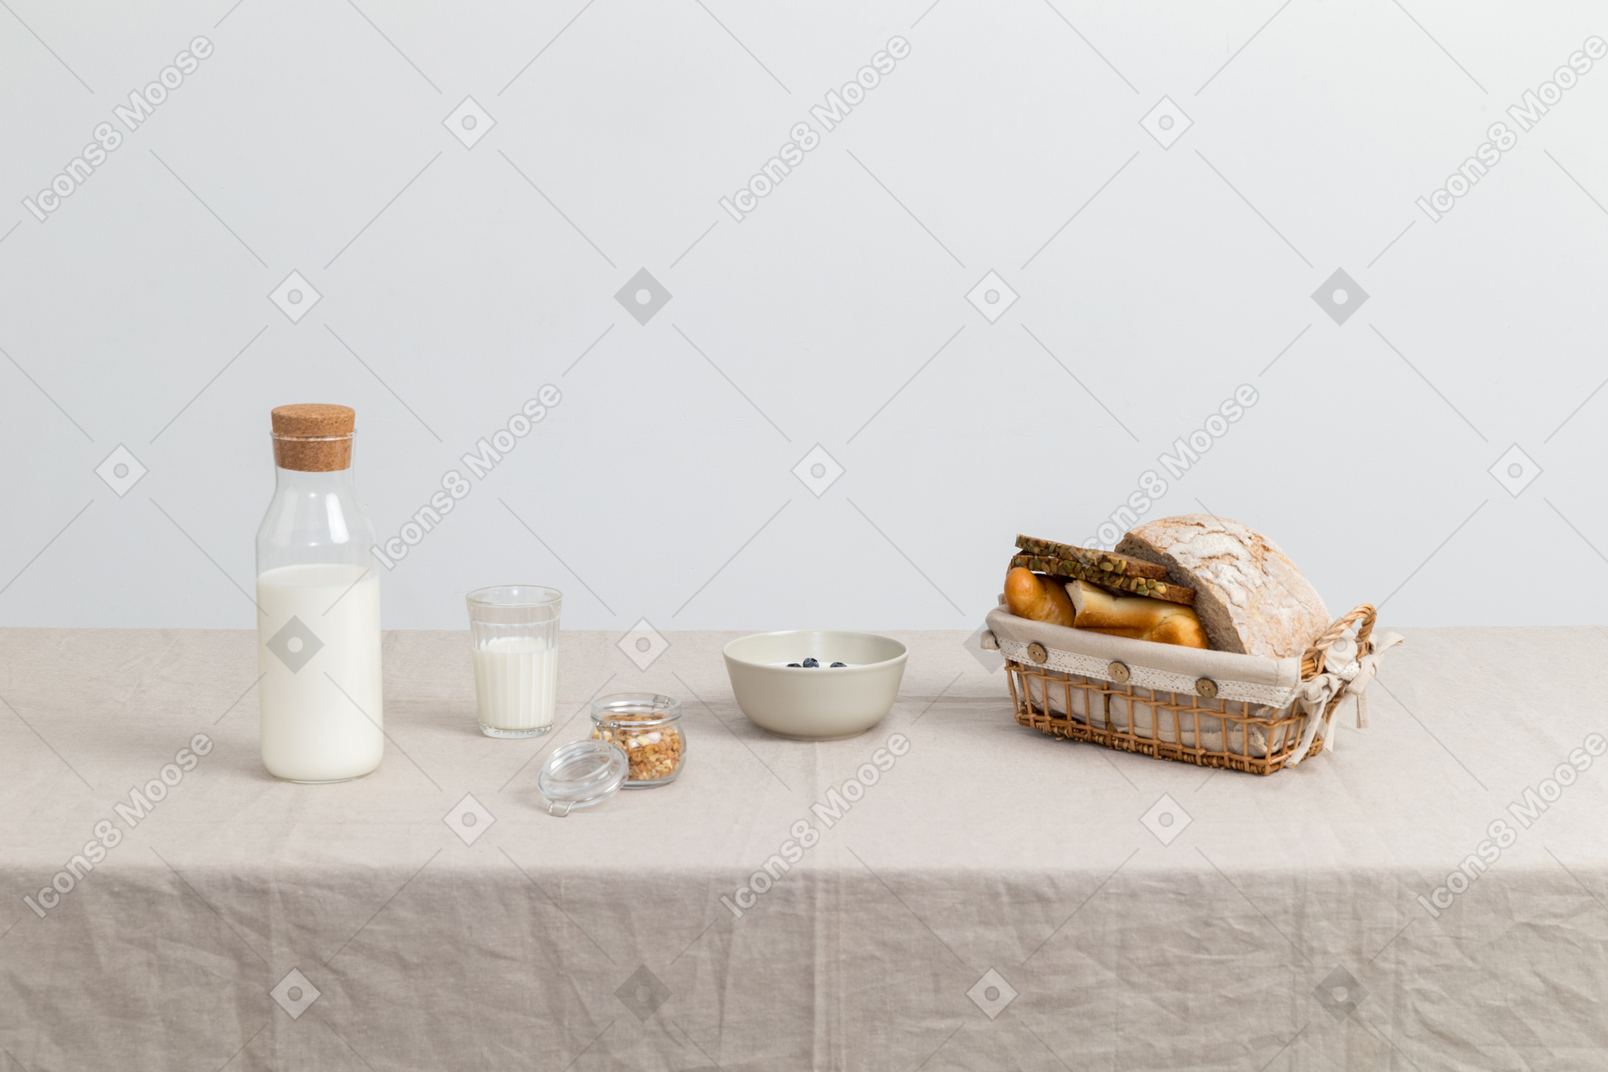 Botella de leche, vaso de leche y pan